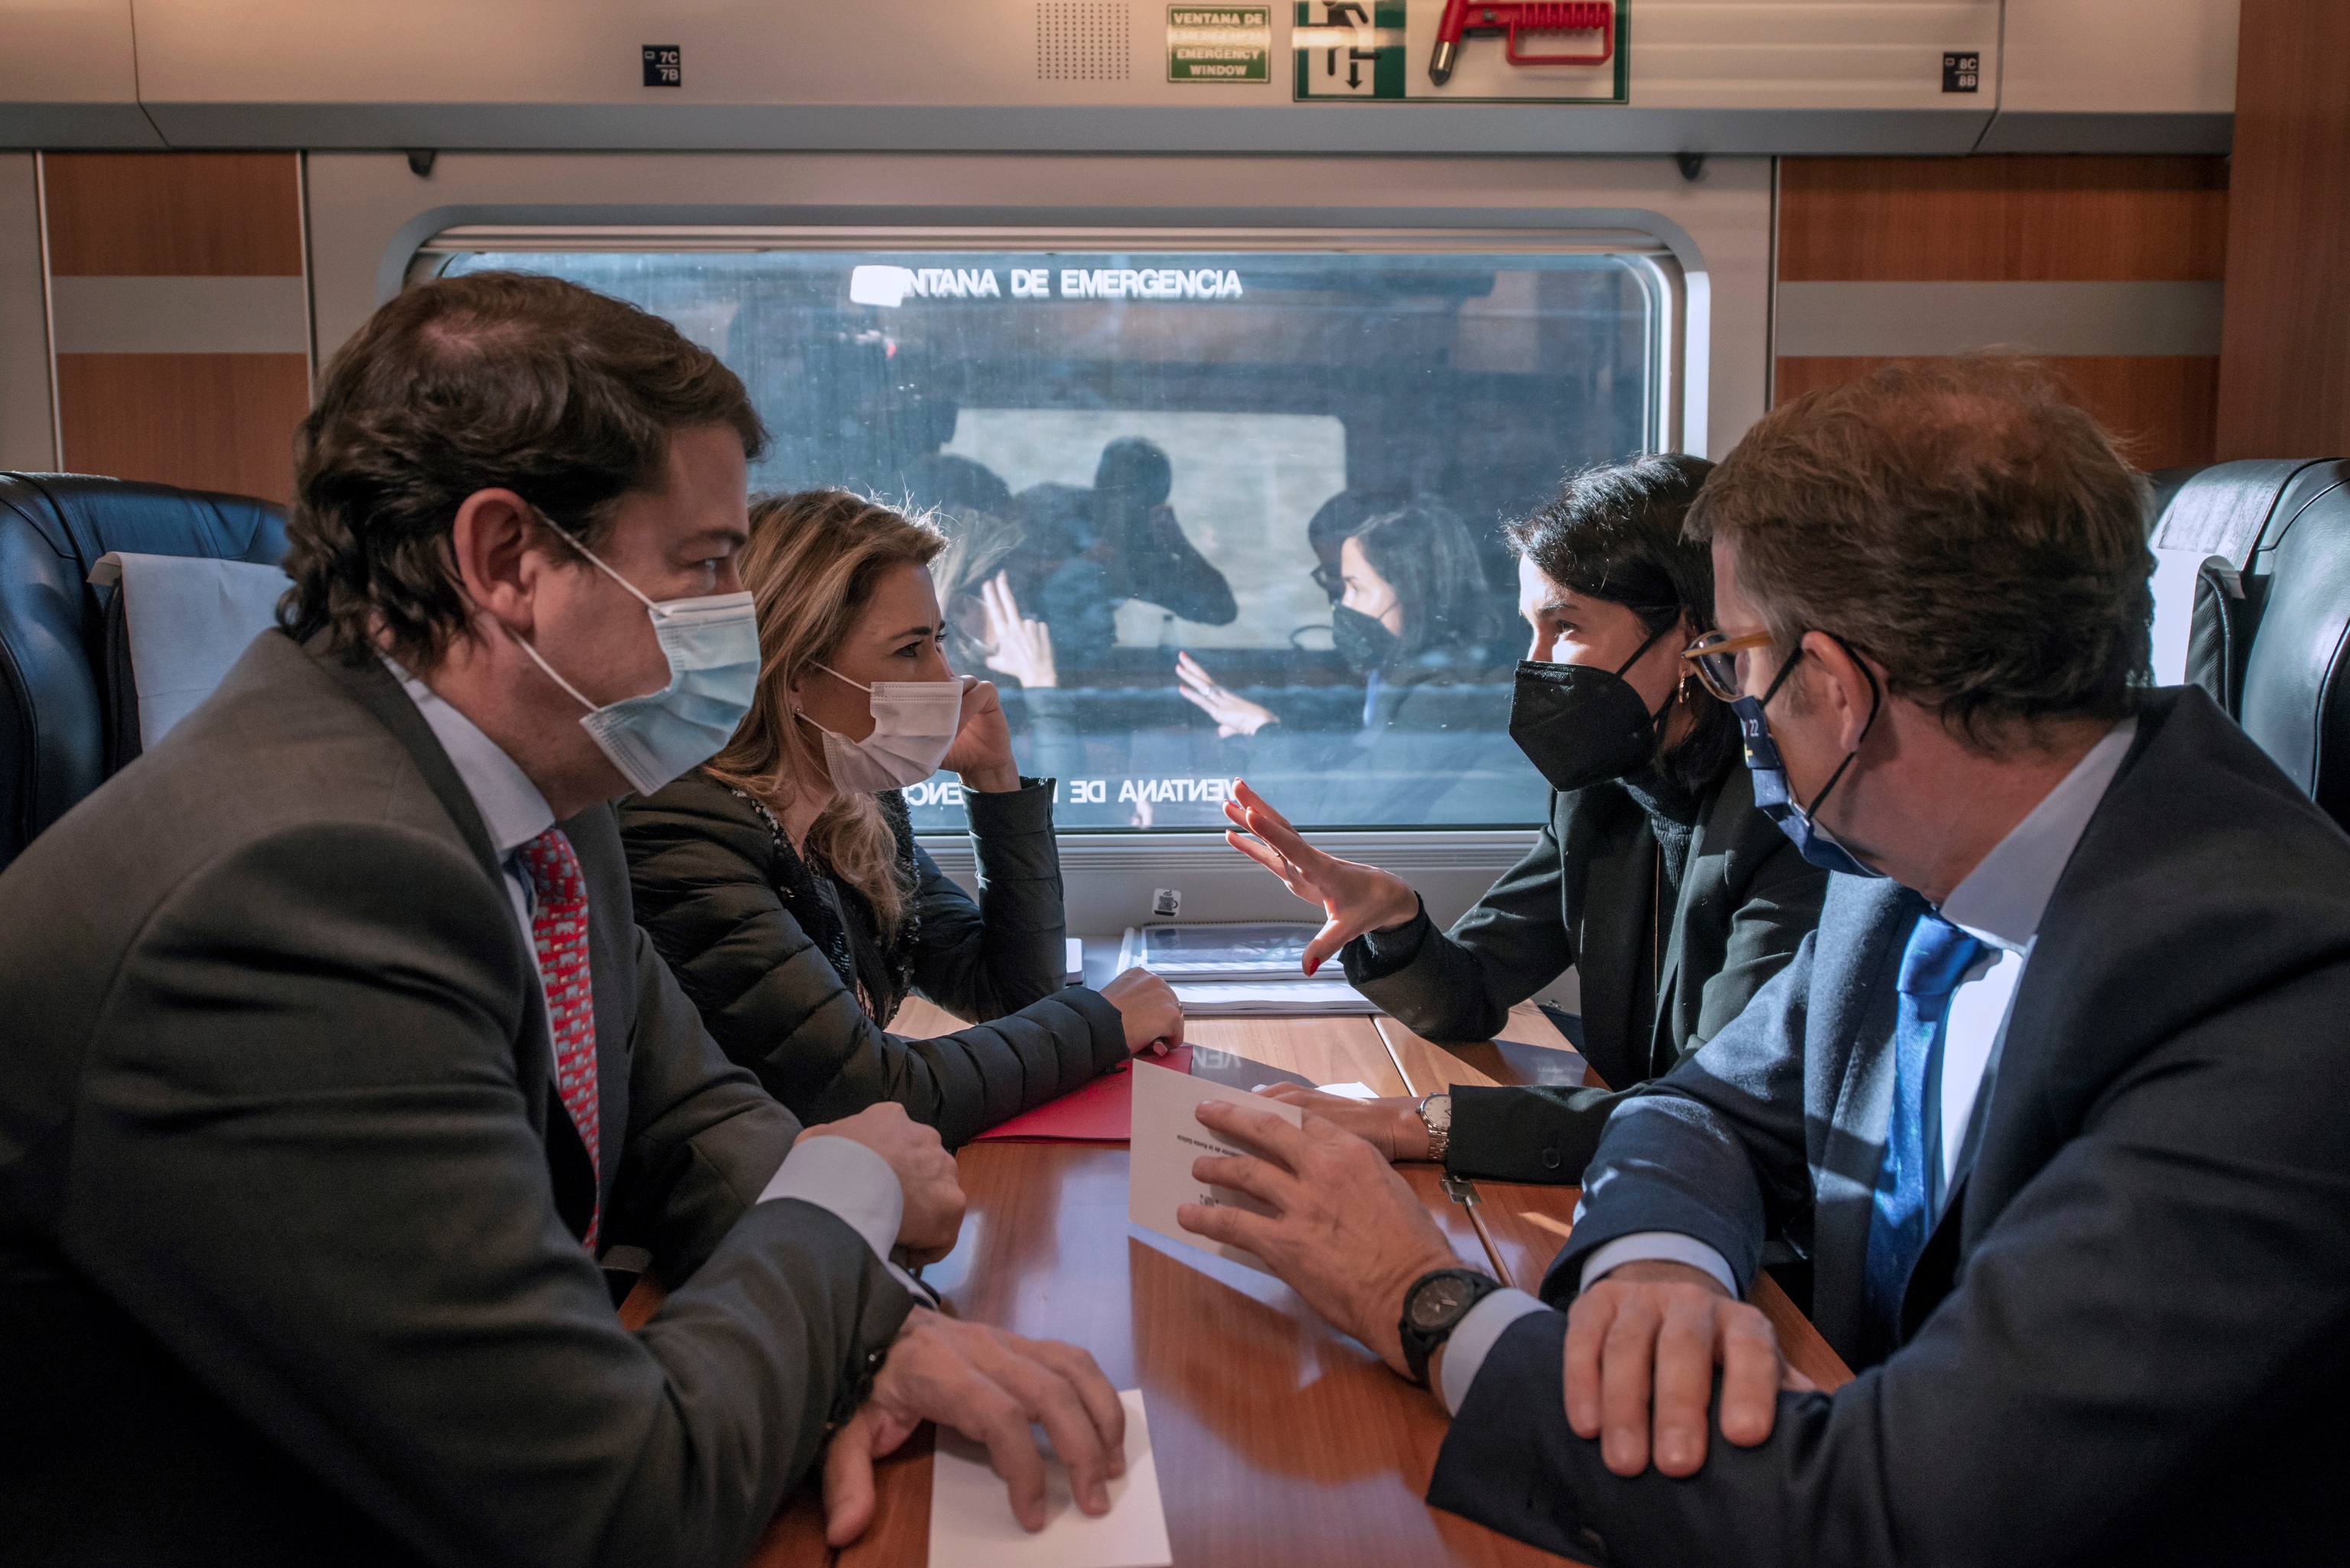 La última línea pendiente del AVE a Galicia entrará en servicio sin contrato de mantenimiento